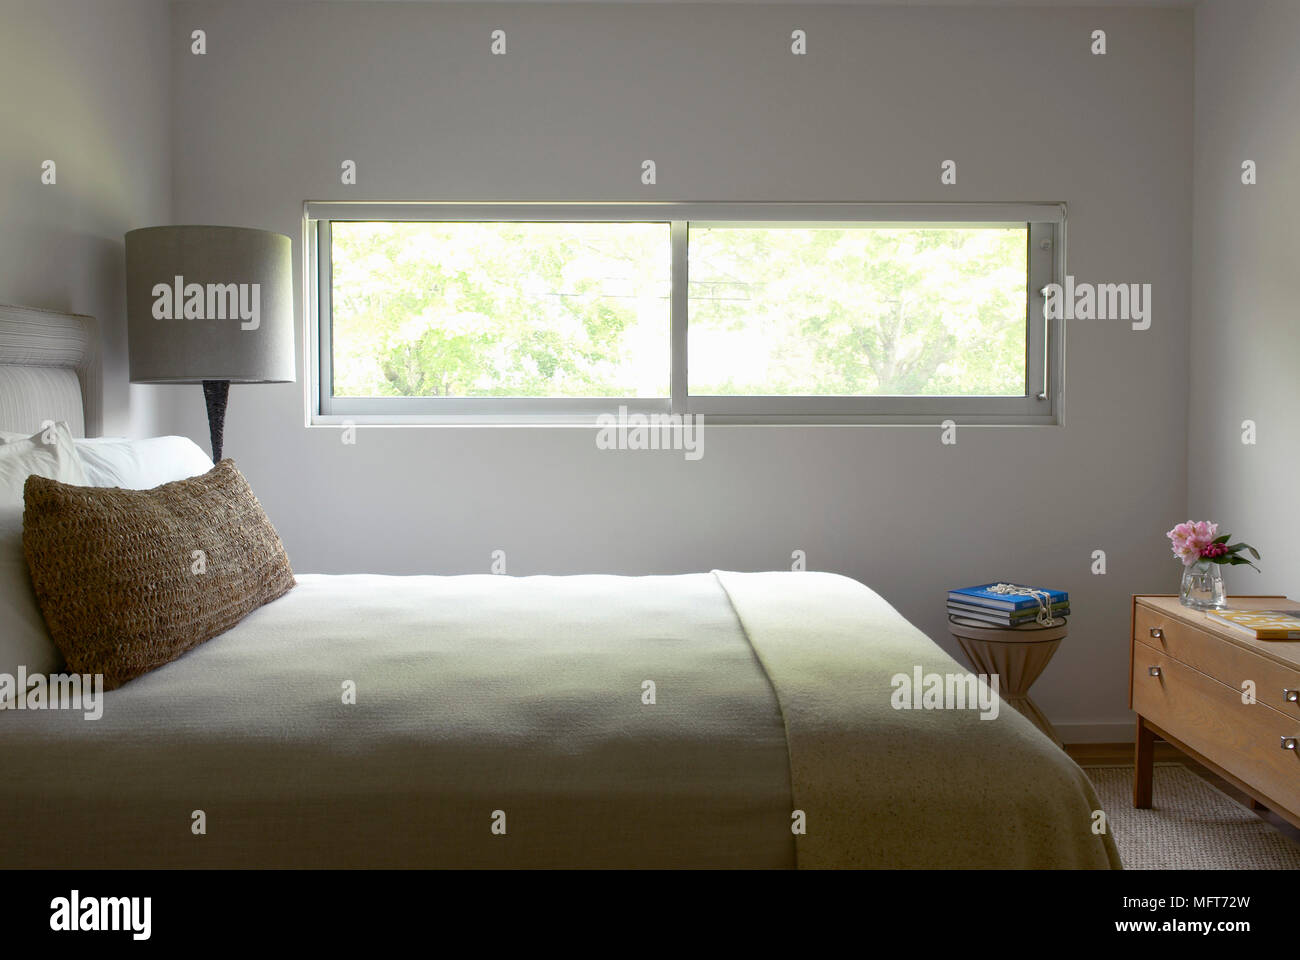 Lampe neben dem Doppelbett in Weiß Schlafzimmer mit schmalen Fenster Stockfoto